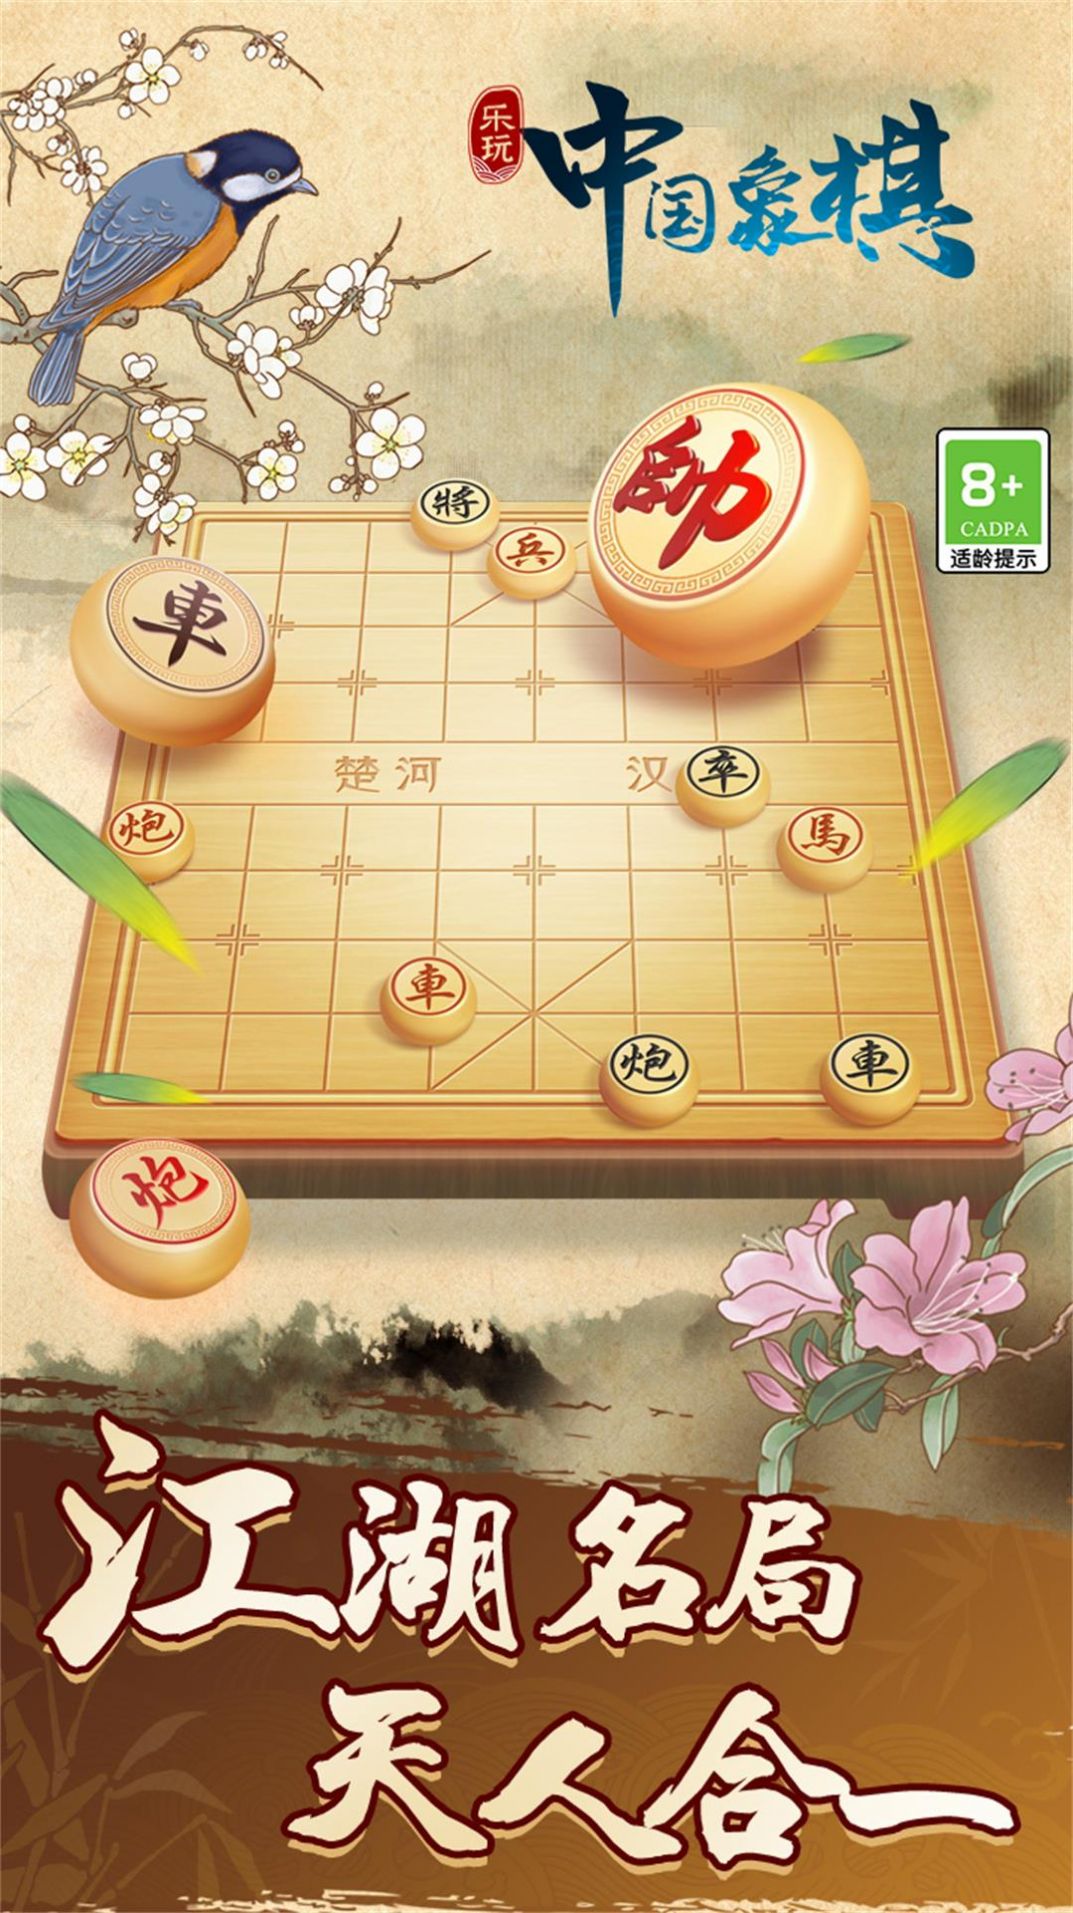 中国象棋巅峰博弈游戏官方手机版截图2: